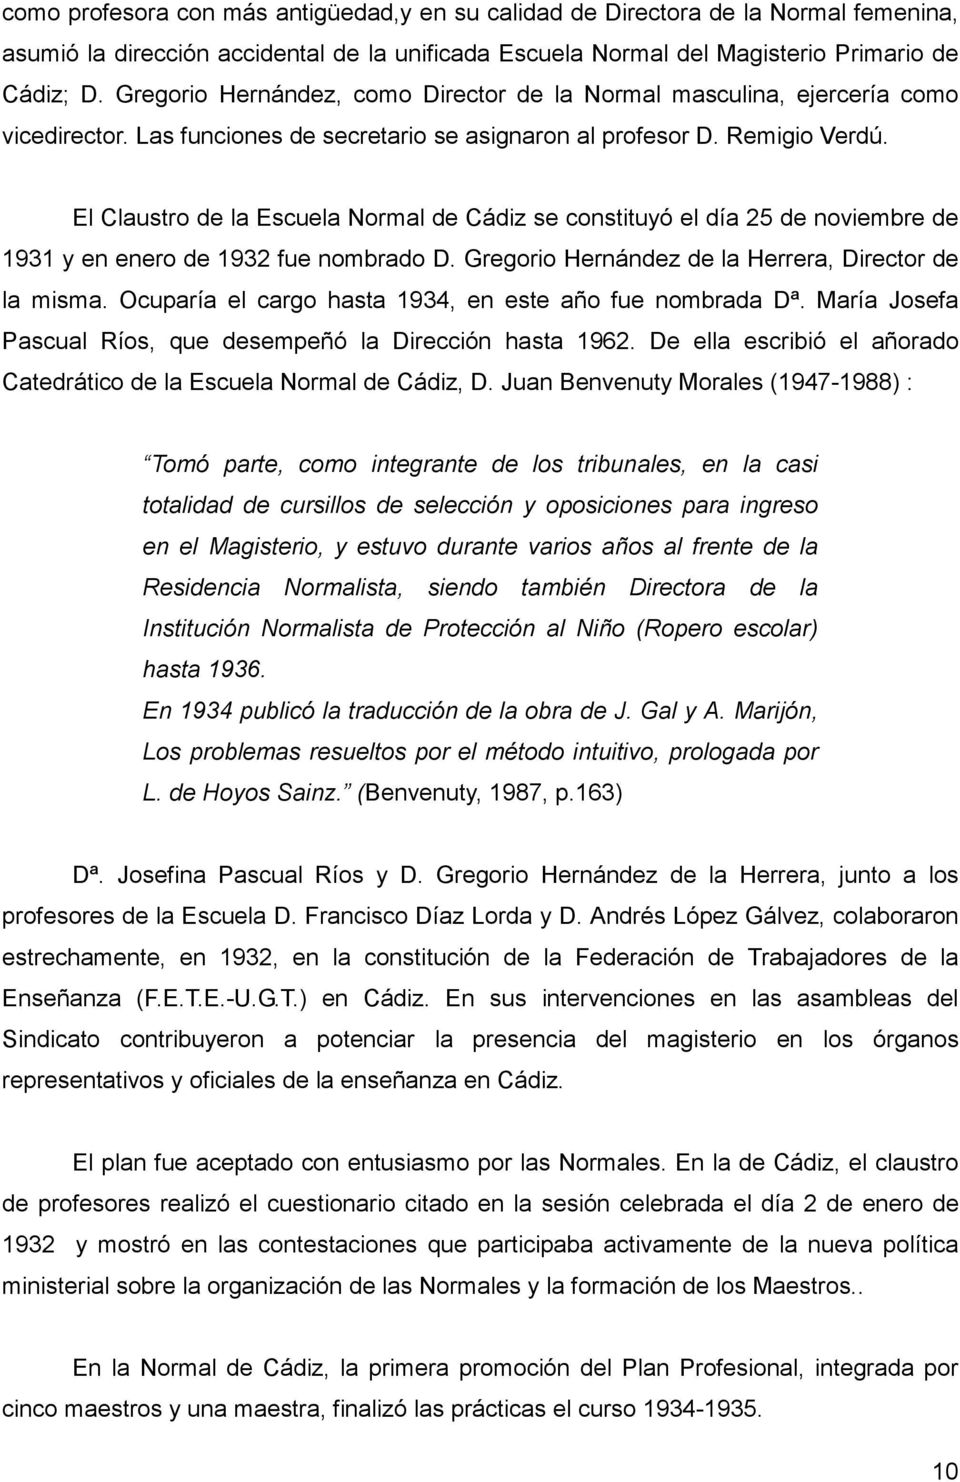 El Claustro de la Escuela Normal de Cádiz se constituyó el día 25 de noviembre de 1931 y en enero de 1932 fue nombrado D. Gregorio Hernández de la Herrera, Director de la misma.